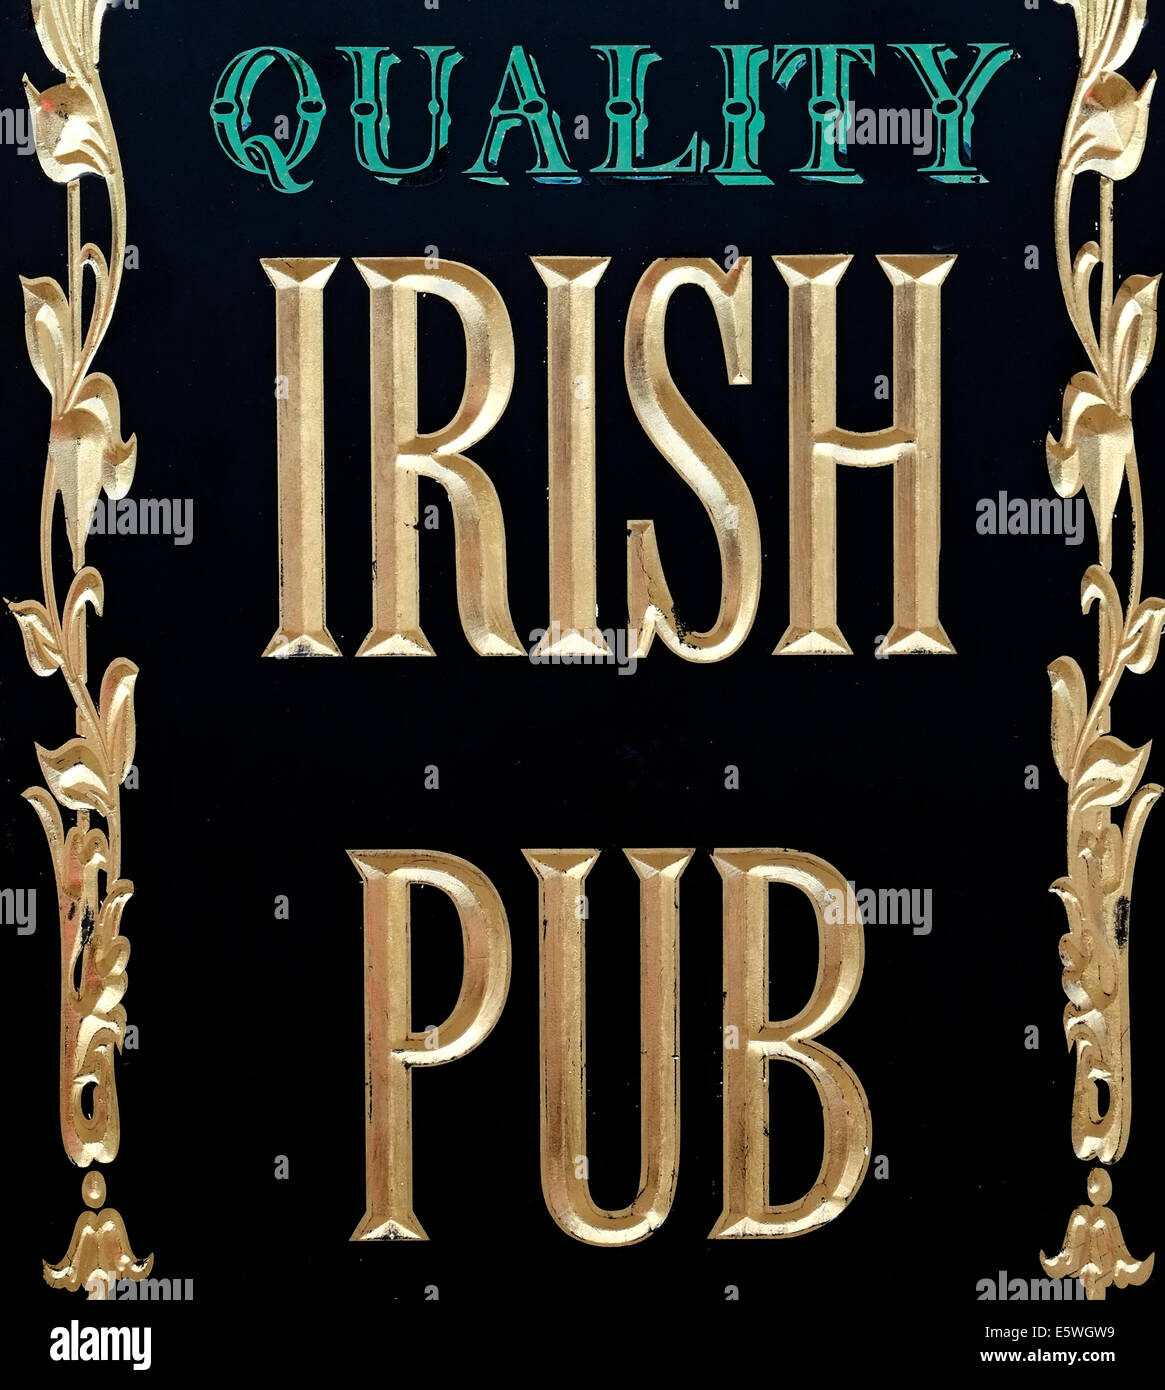 La bière Guiness IRLANDAIS VINTAGE ENSEIGNE DE PUB,IRLANDE KILLARNEY Banque D'Images